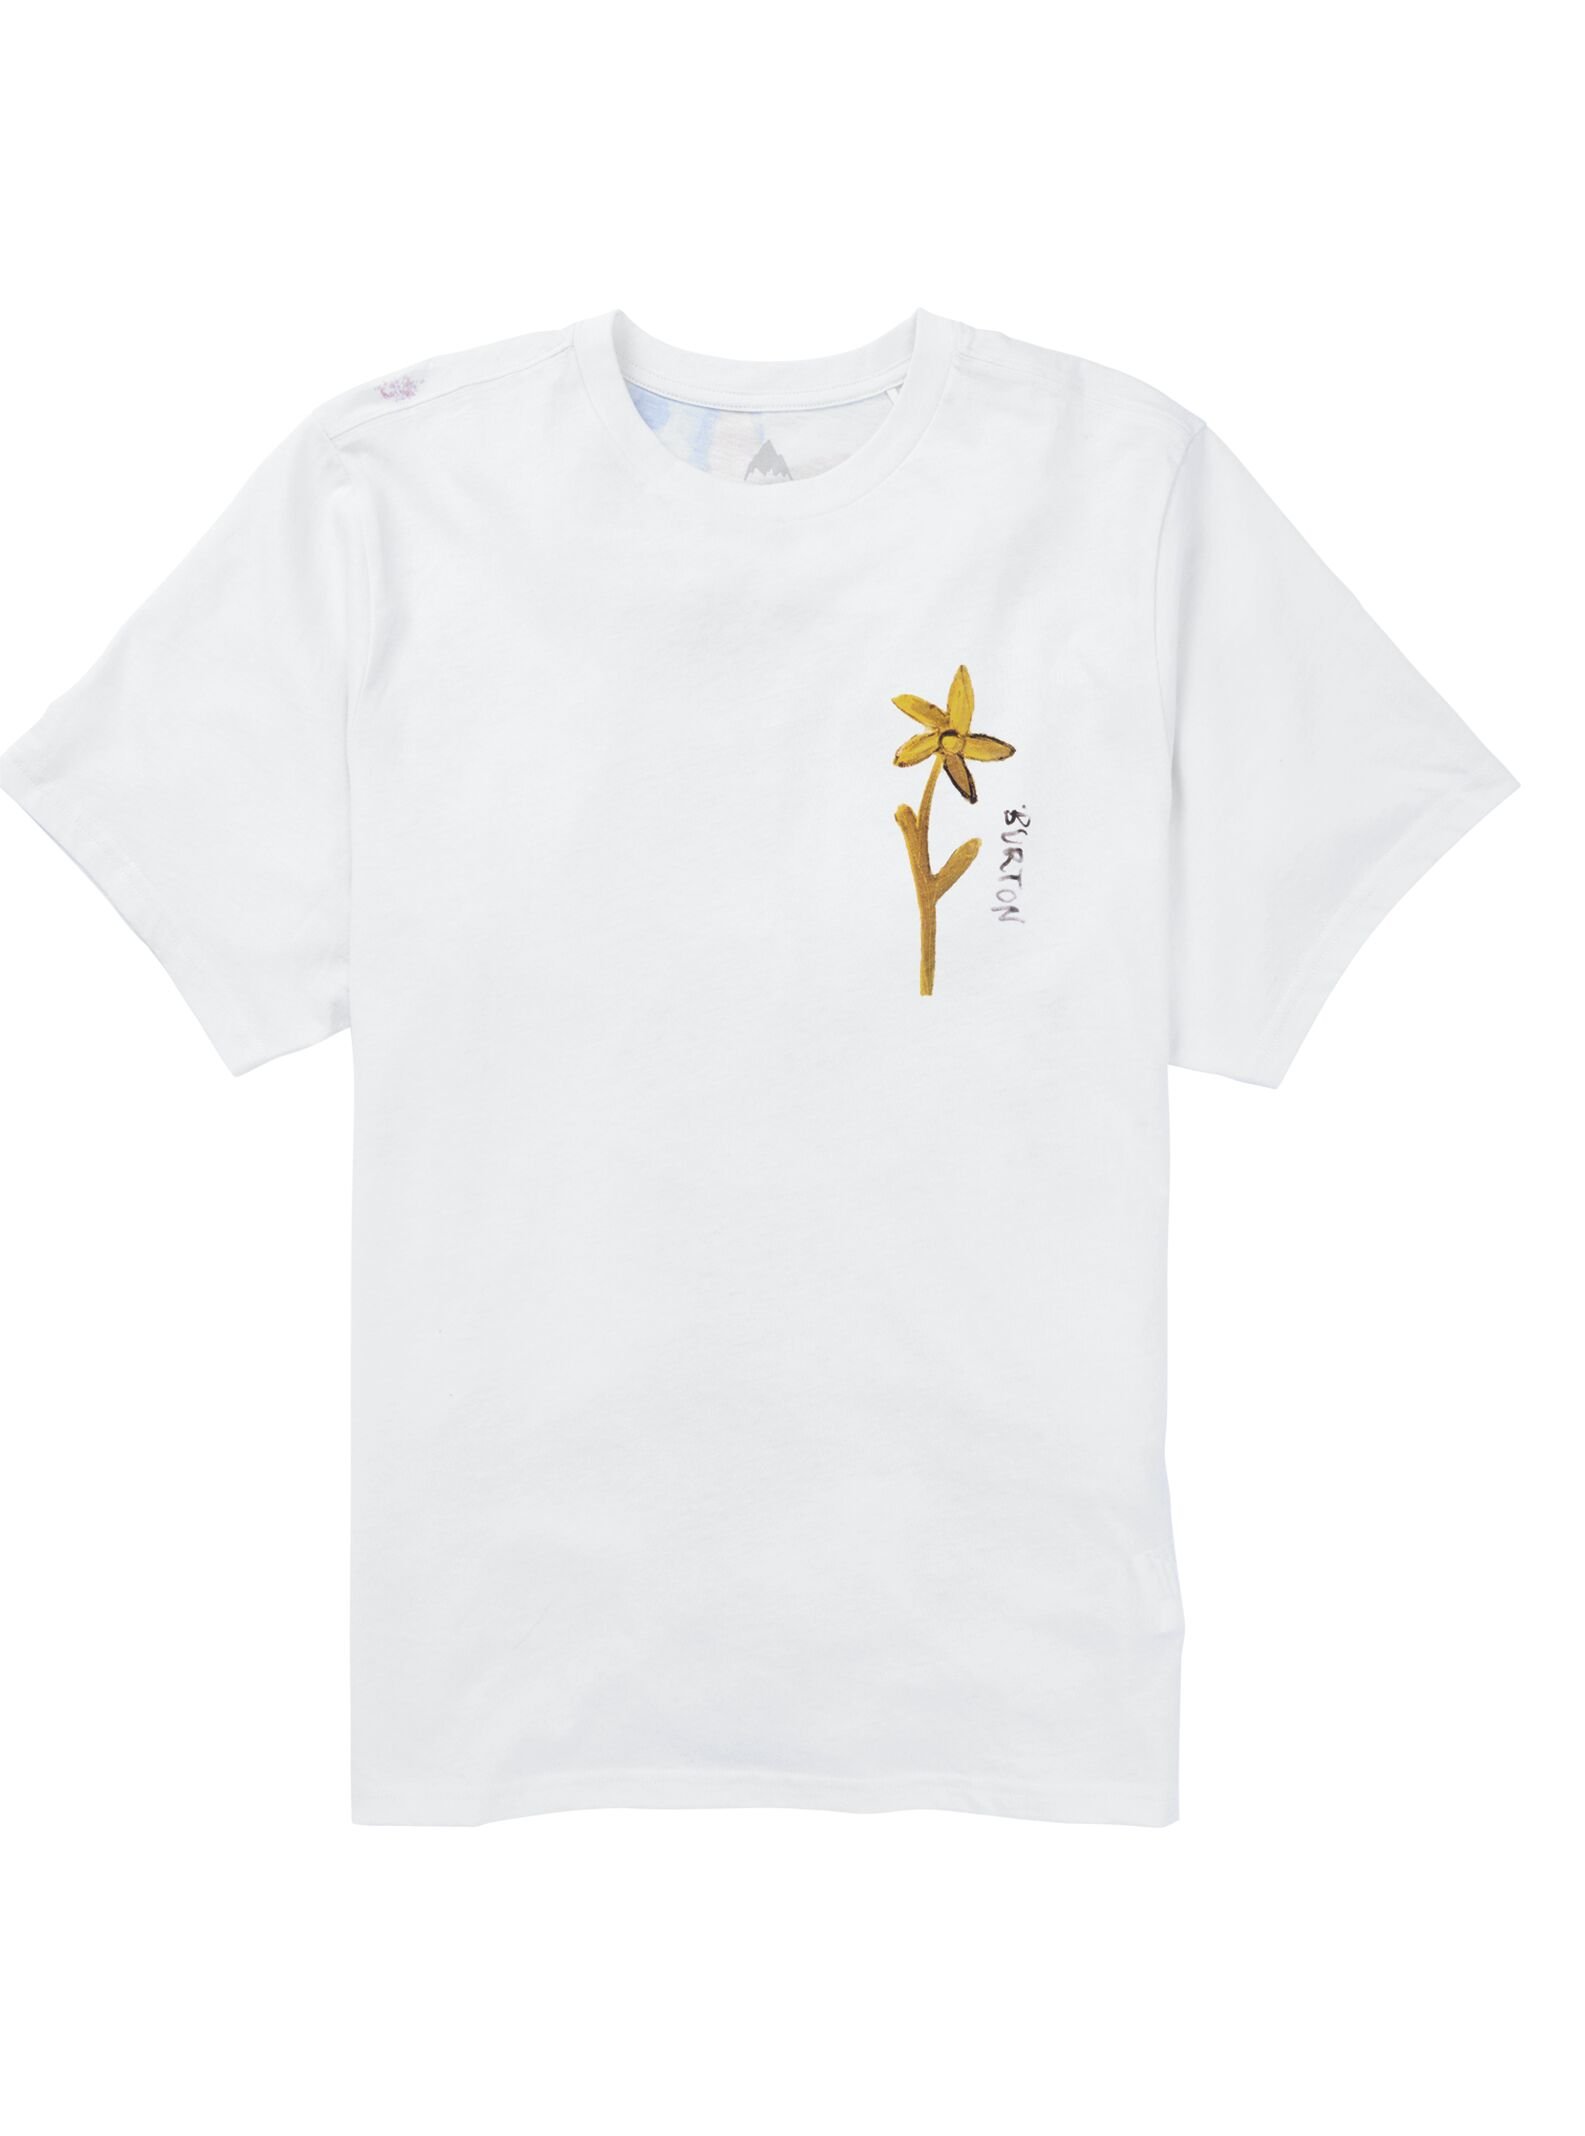 Blossom 24 Short Sleeve T-Shirt